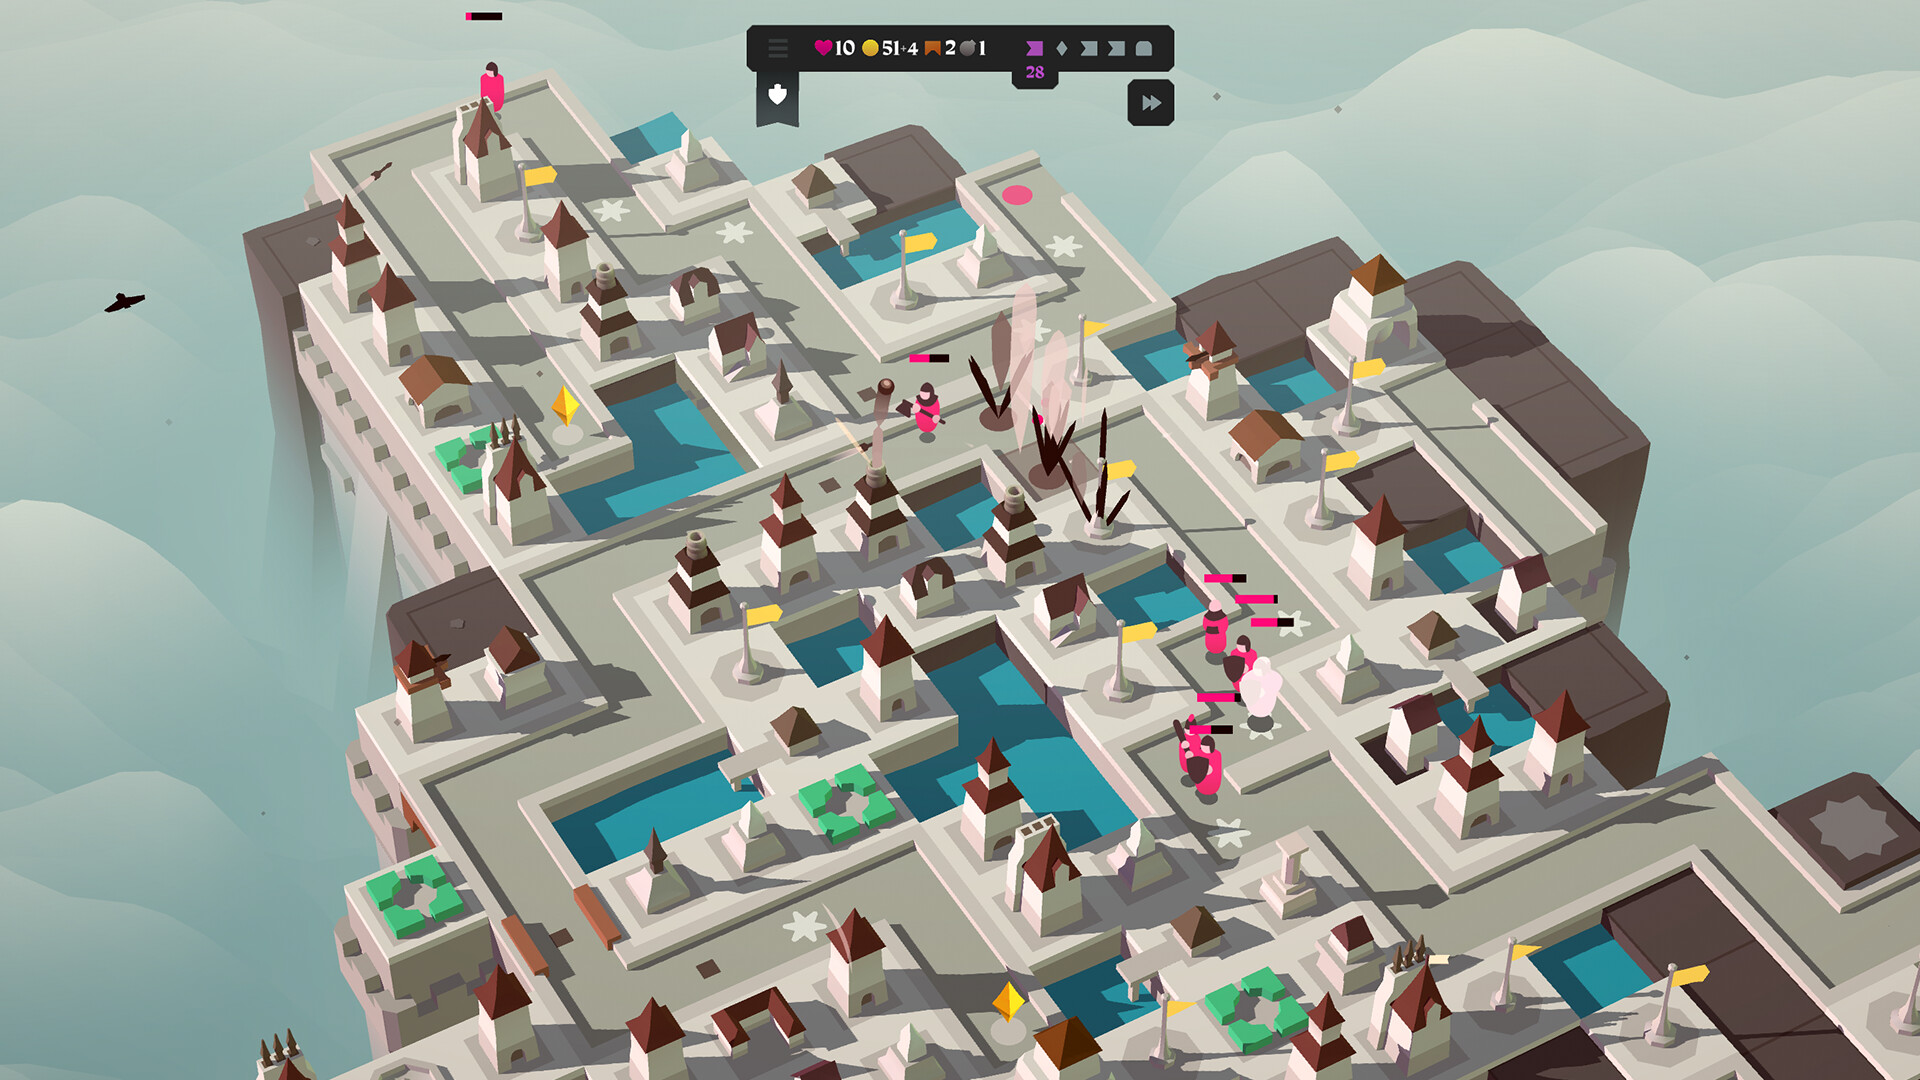 塔防棋盘肉鸽游戏《箭之岛屿》 现已在Steam发售 二次世界 第3张